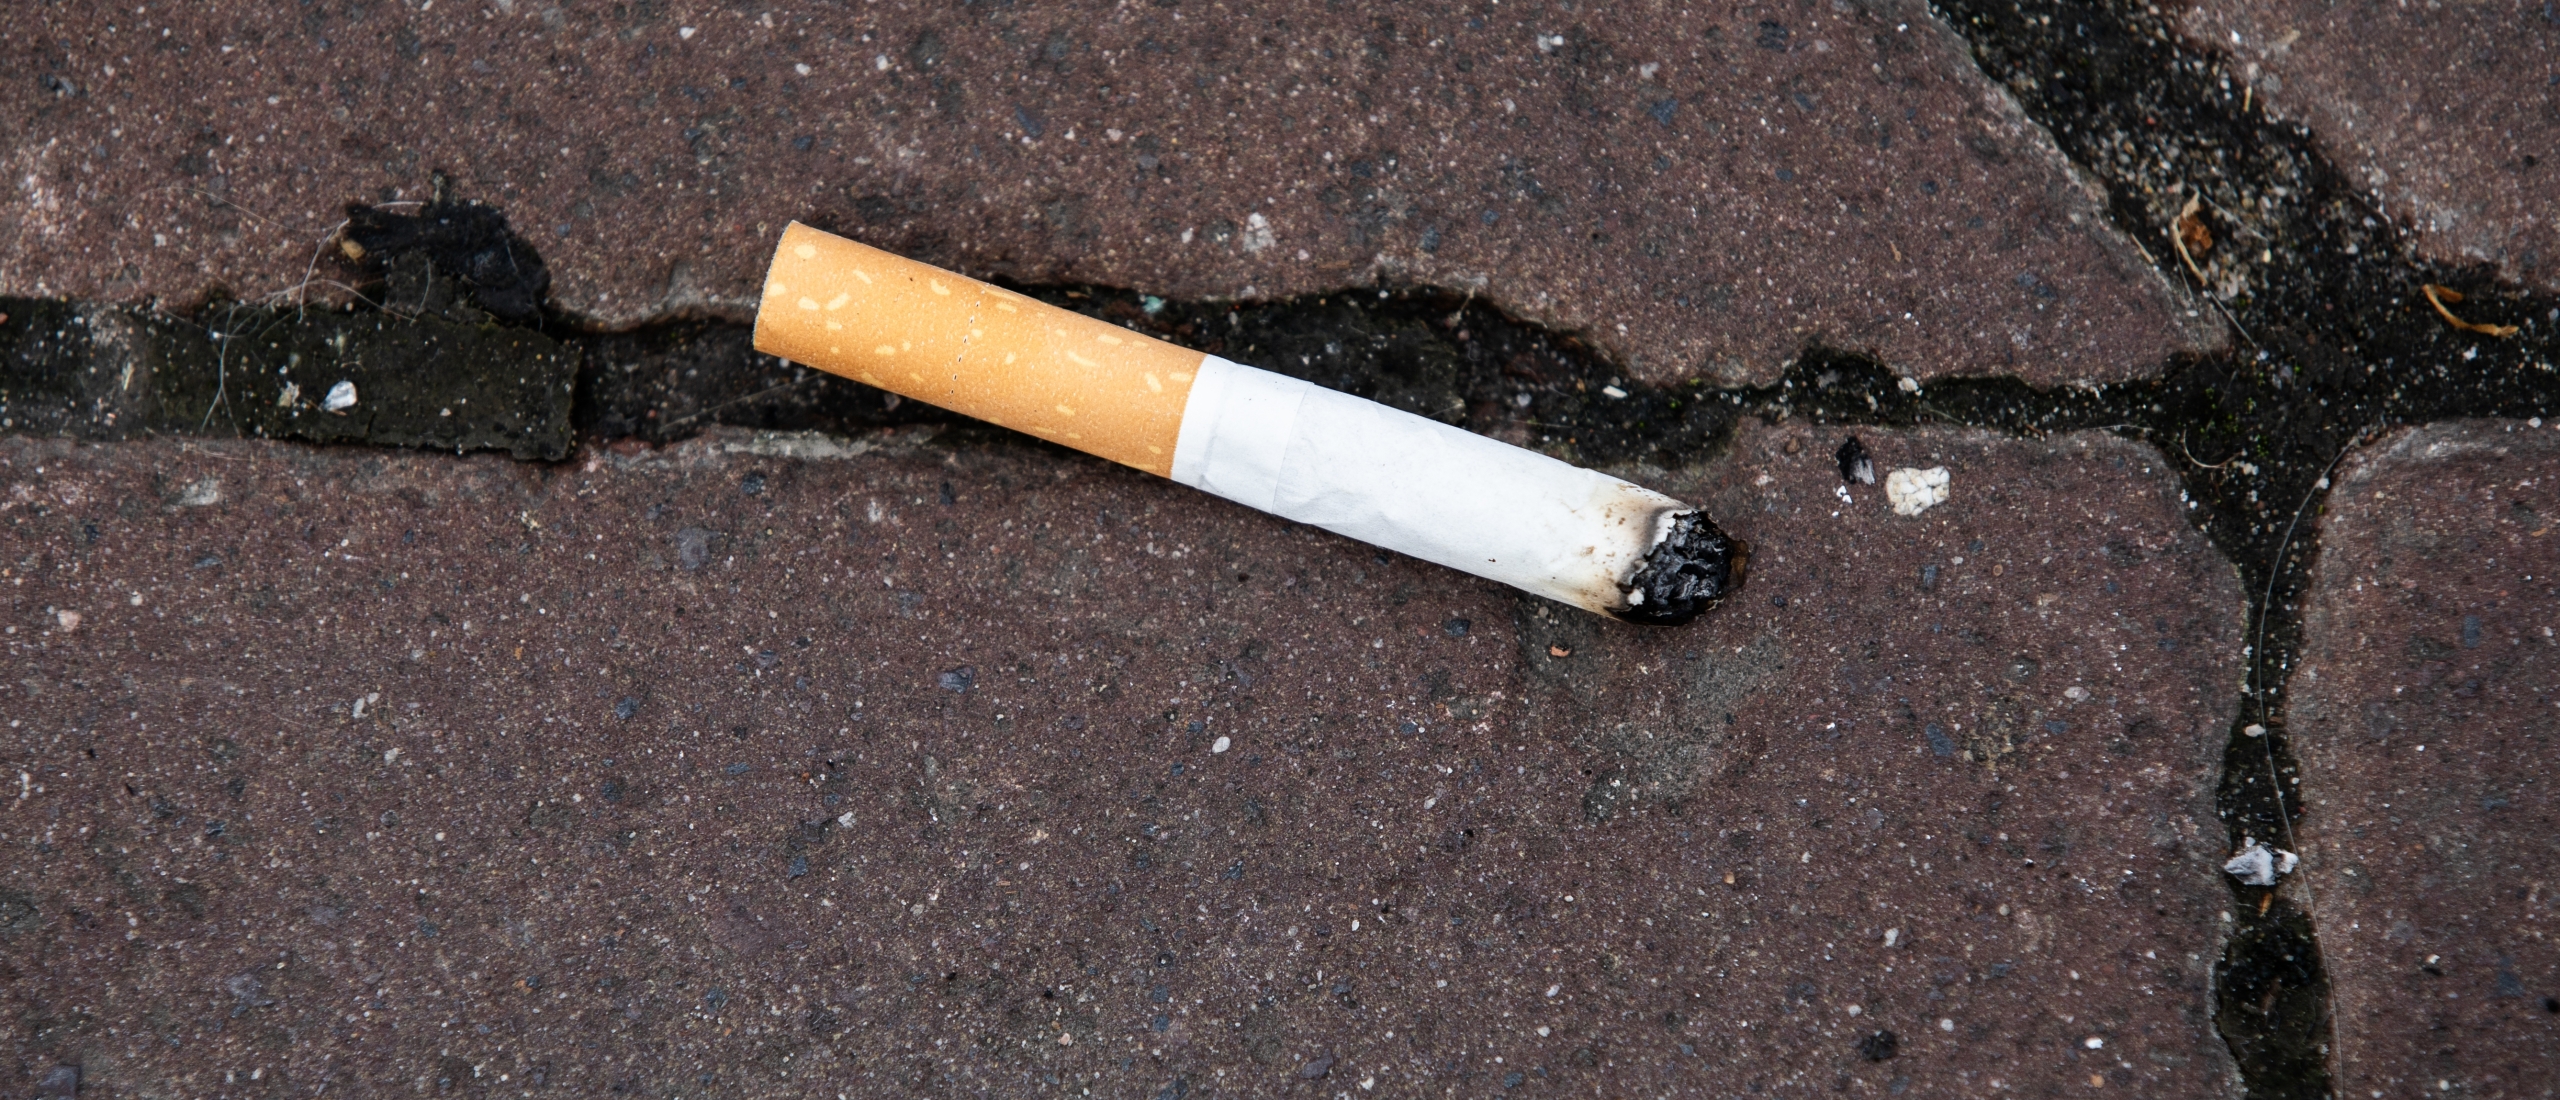 Roken wereldwijd minder in trek: een op de vijf rookt volgens WHO